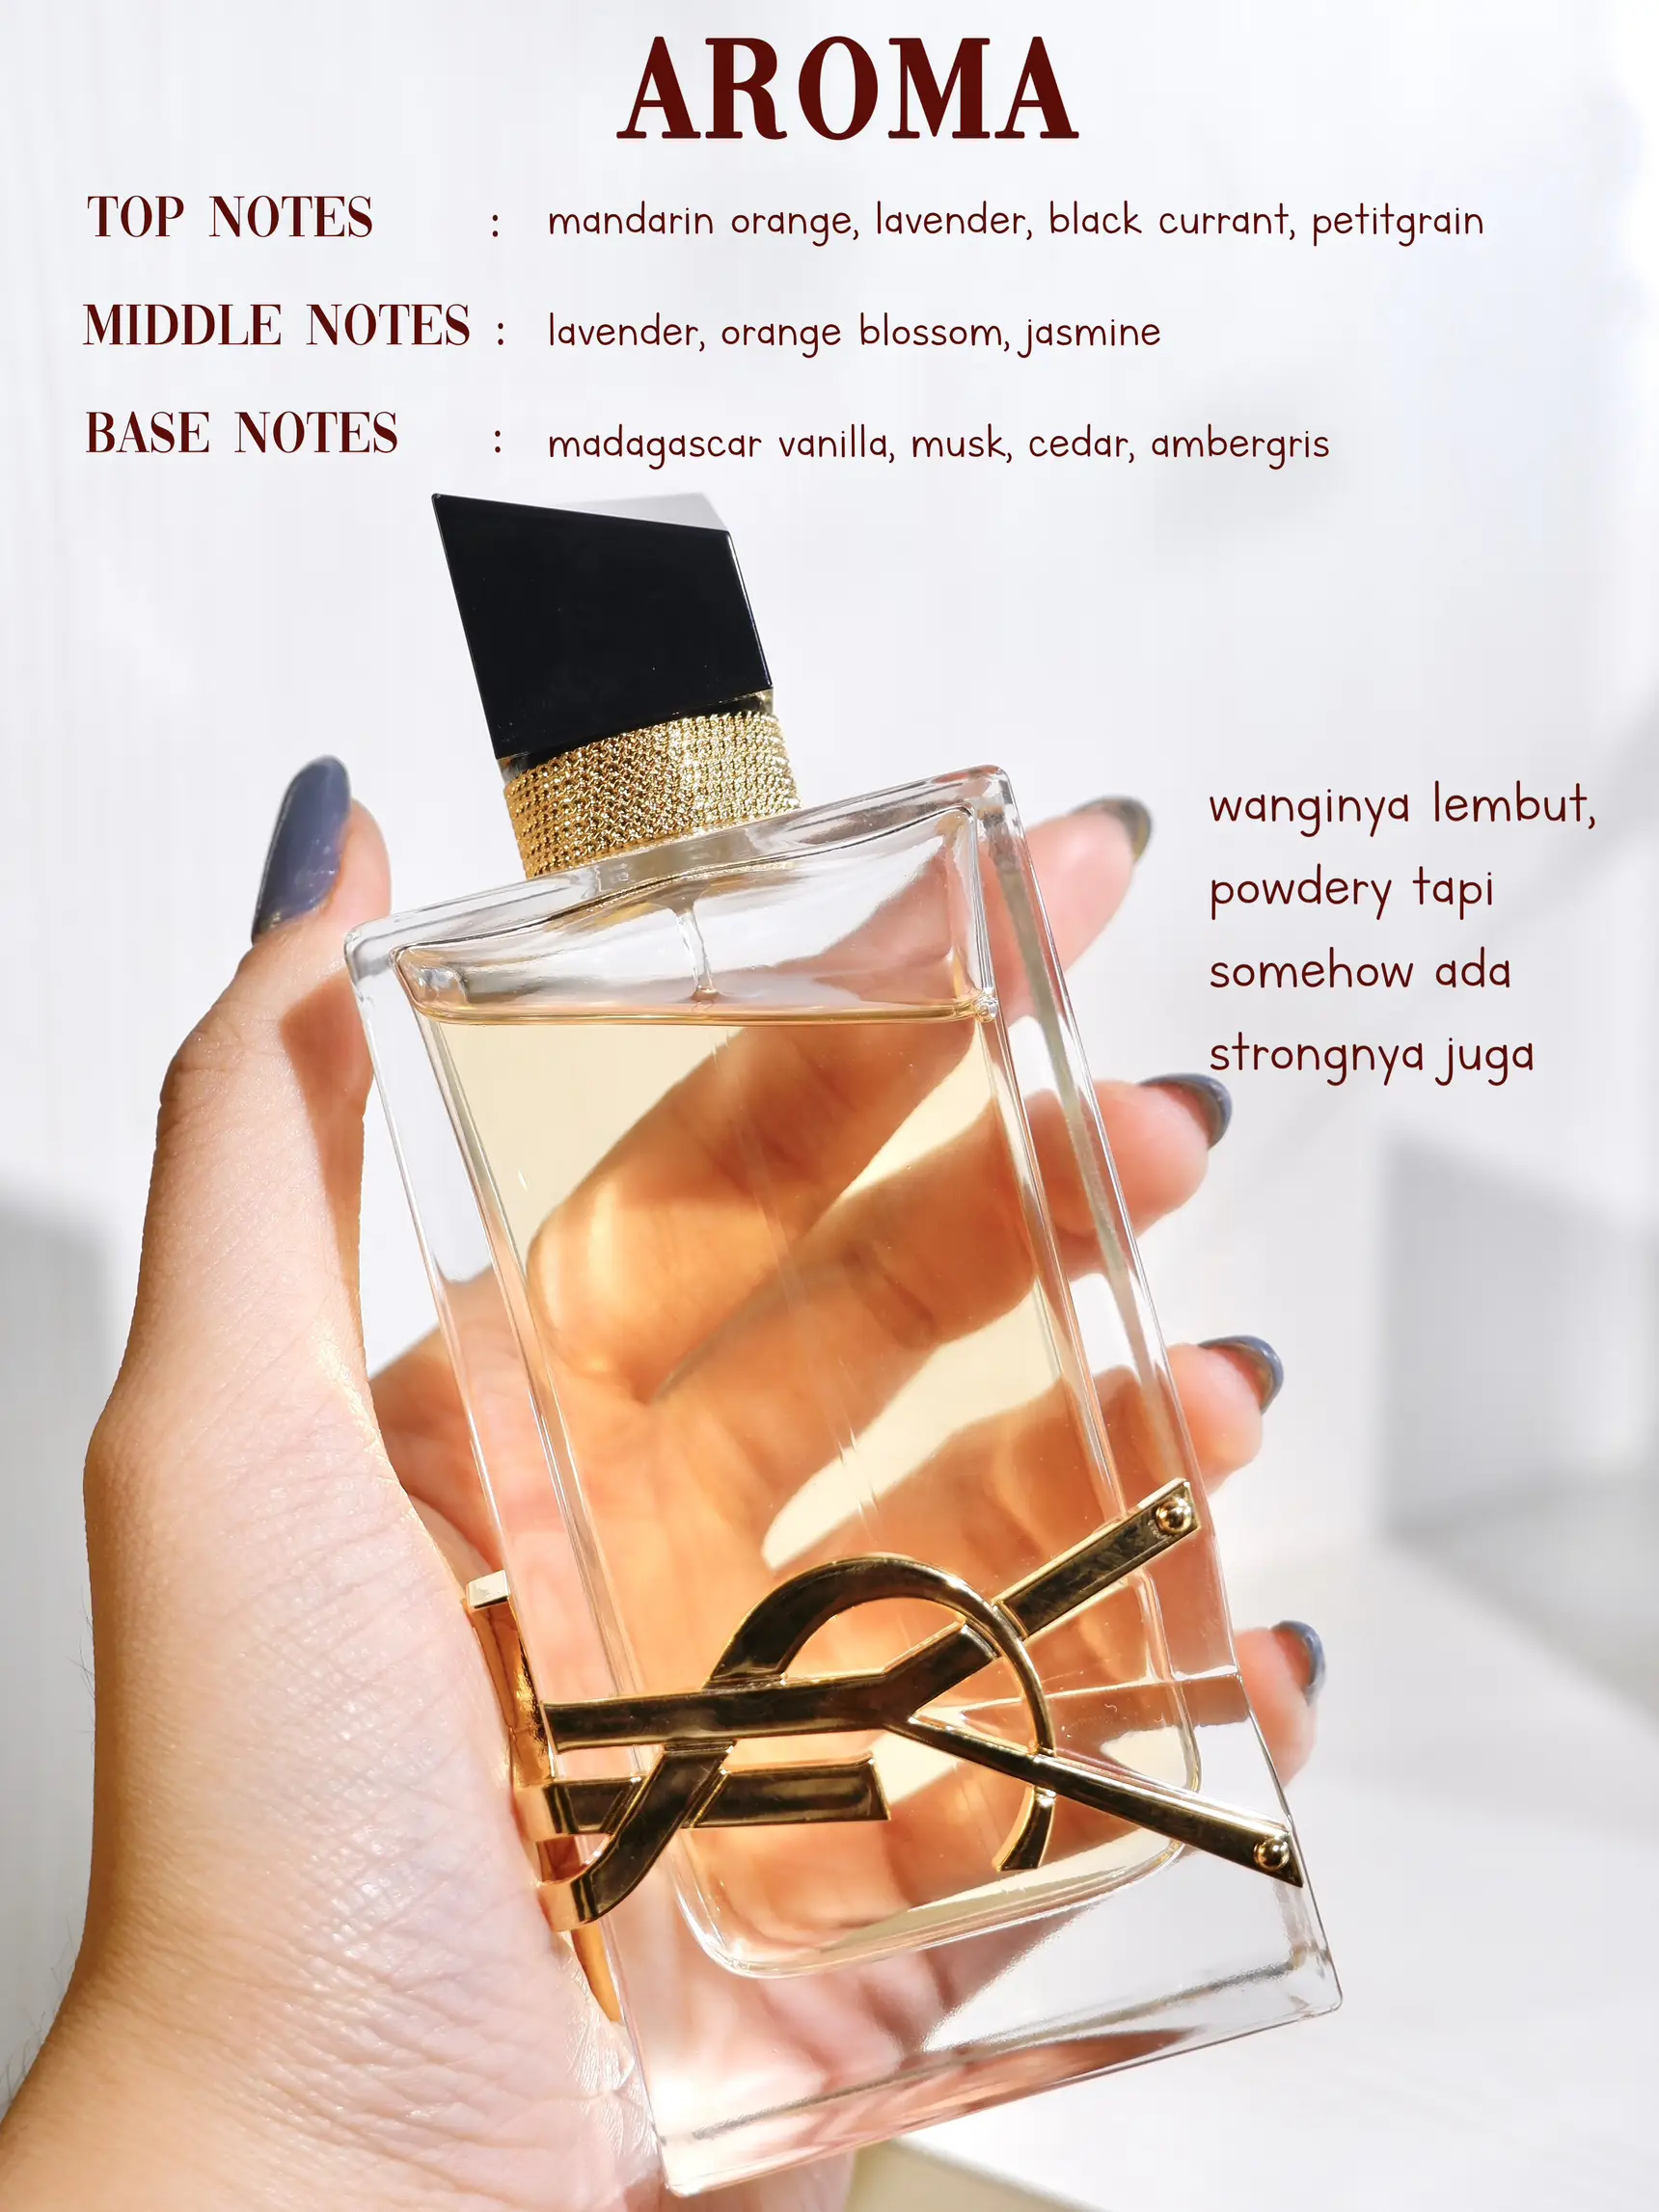 ysl libre parfum kw vs ori - Lemon8 Search